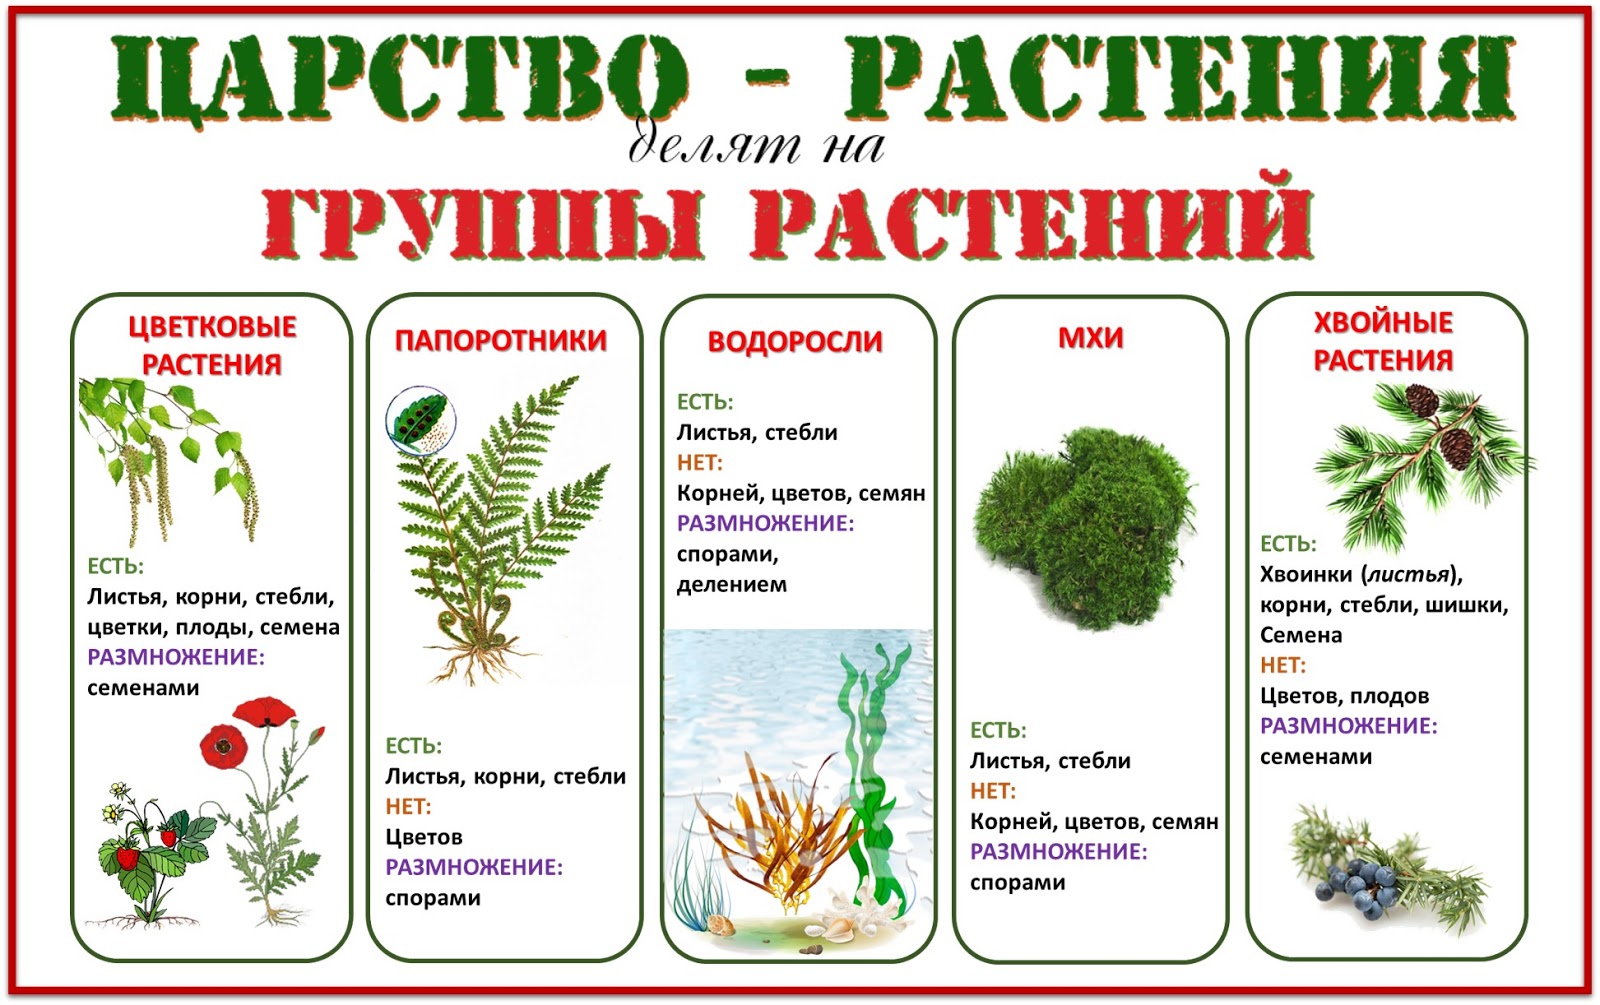 Появления основных групп растений на земле. Группы растений. Деление растений на группы. Царство растений. Группы царства растений.